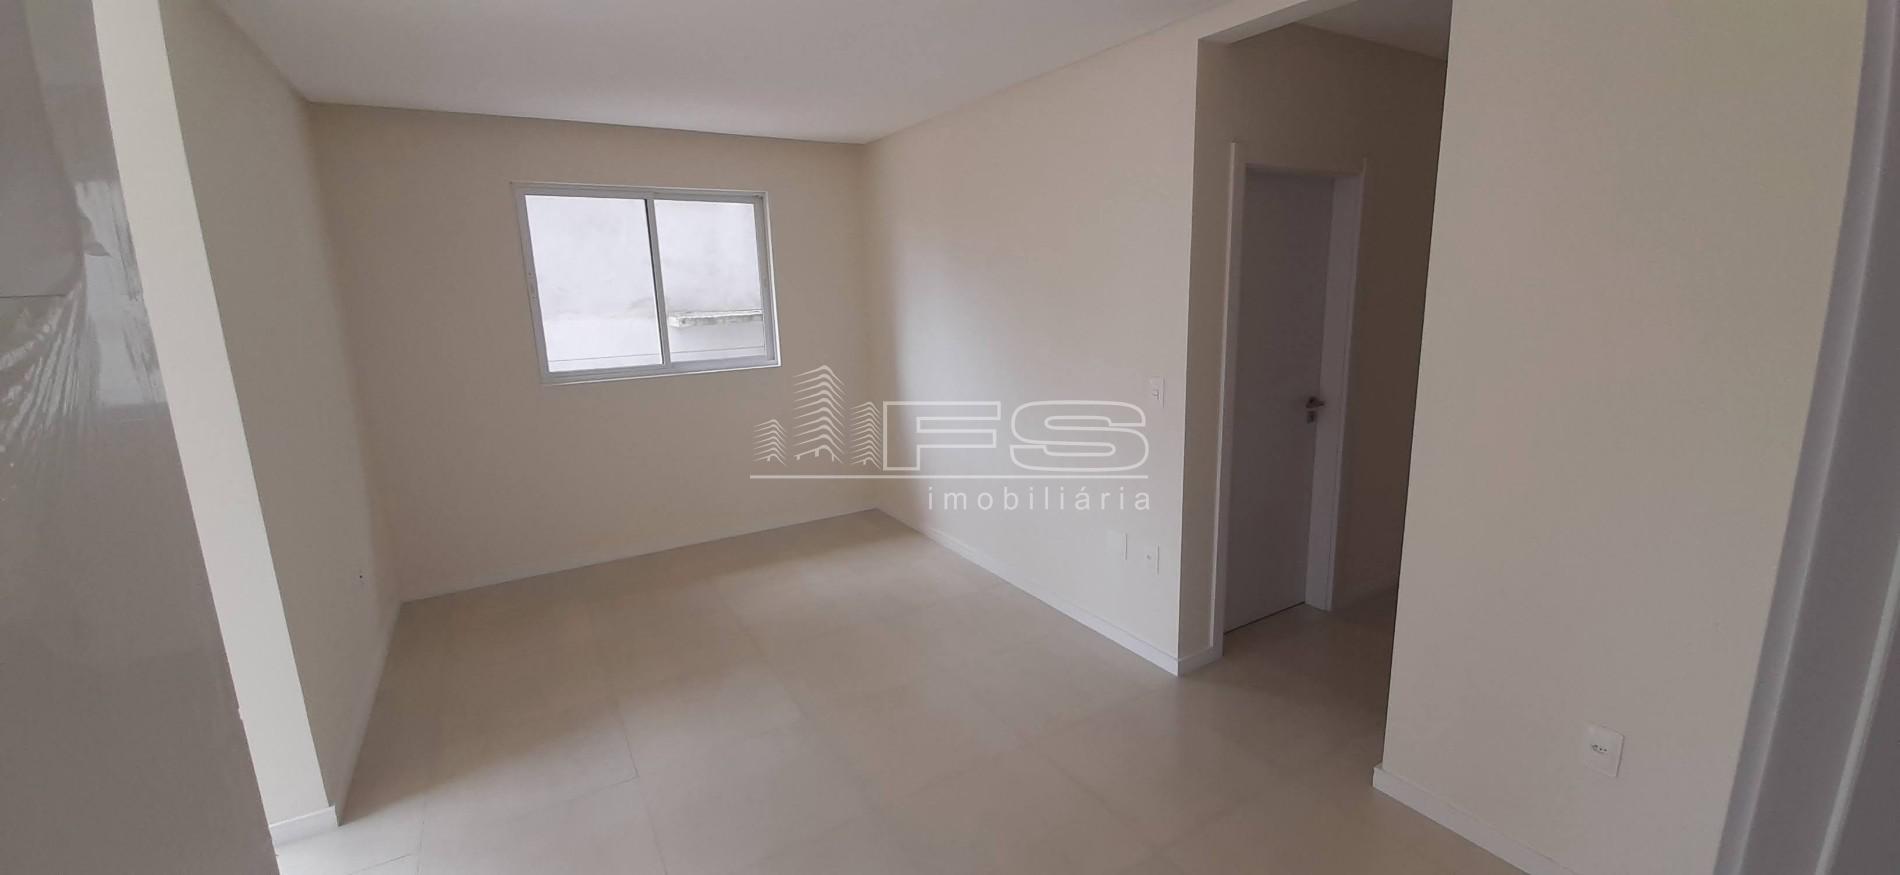 Apartamento com 2 Dormitórios à venda, 68 m² por R$ 735.000,00